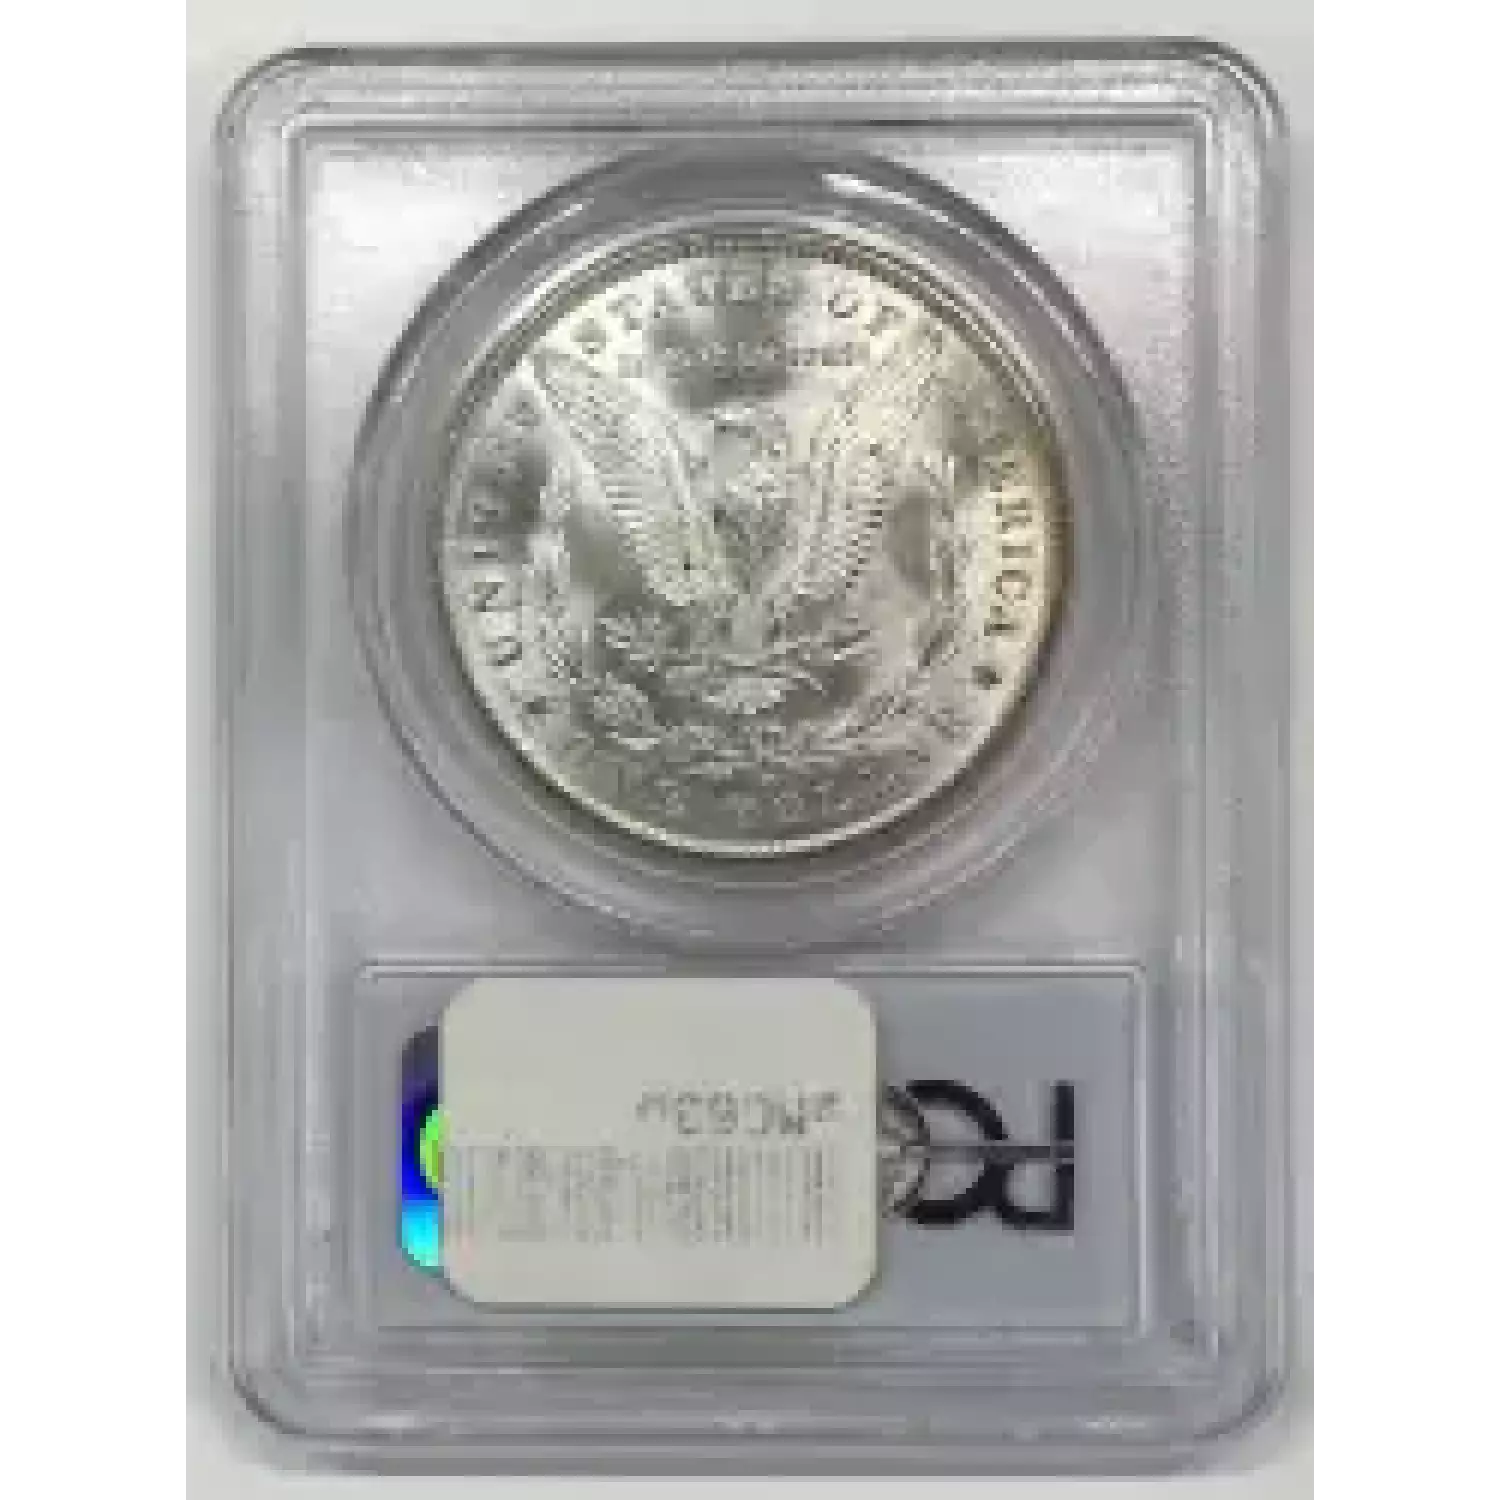 1884-O $1 (2)